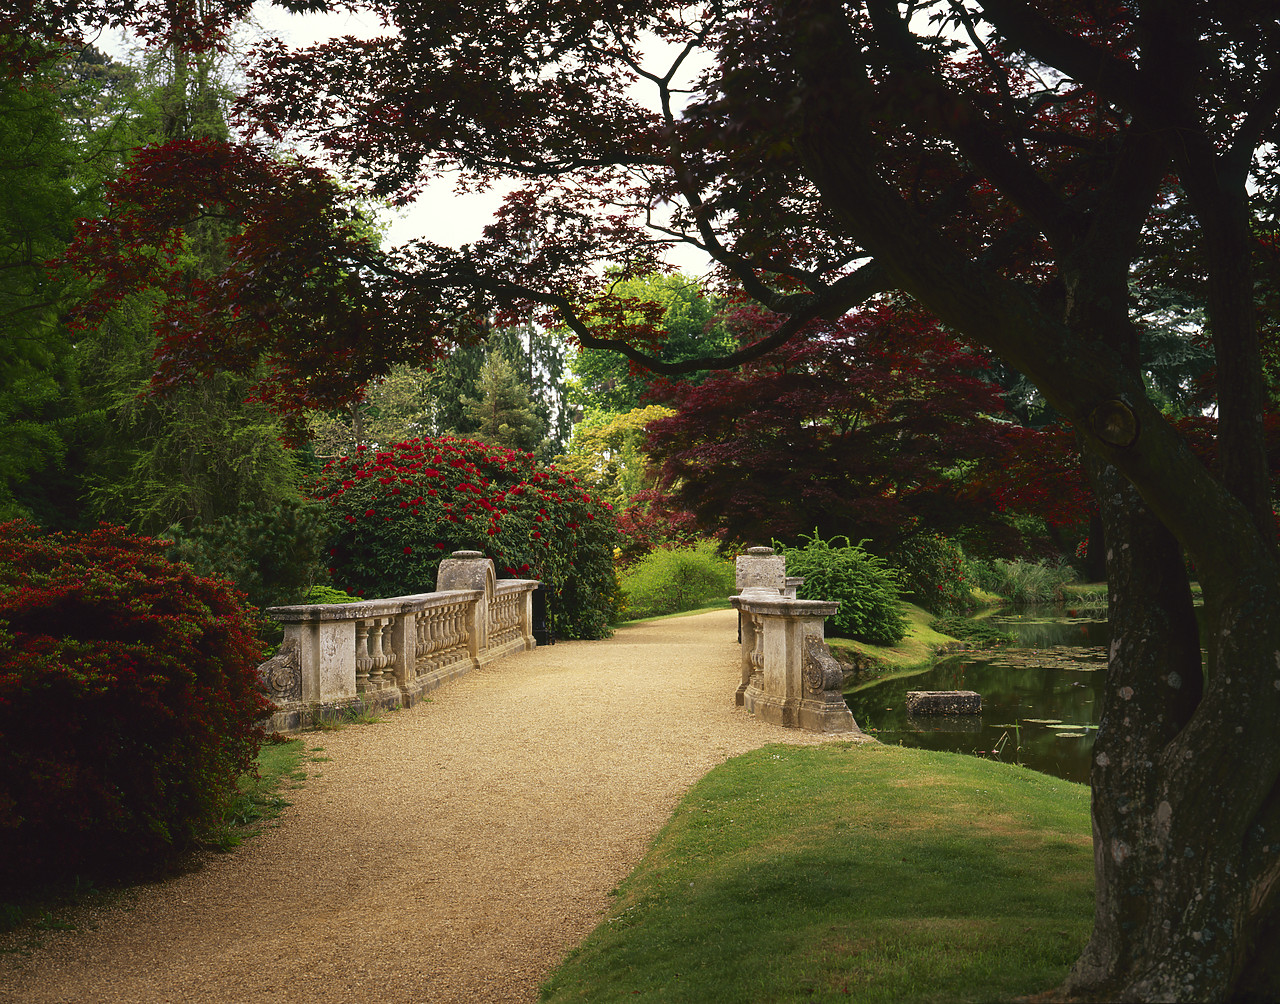 #980692-2 - Garden Path & Bridge, Sheffield Park Gardens, East Sussex, England